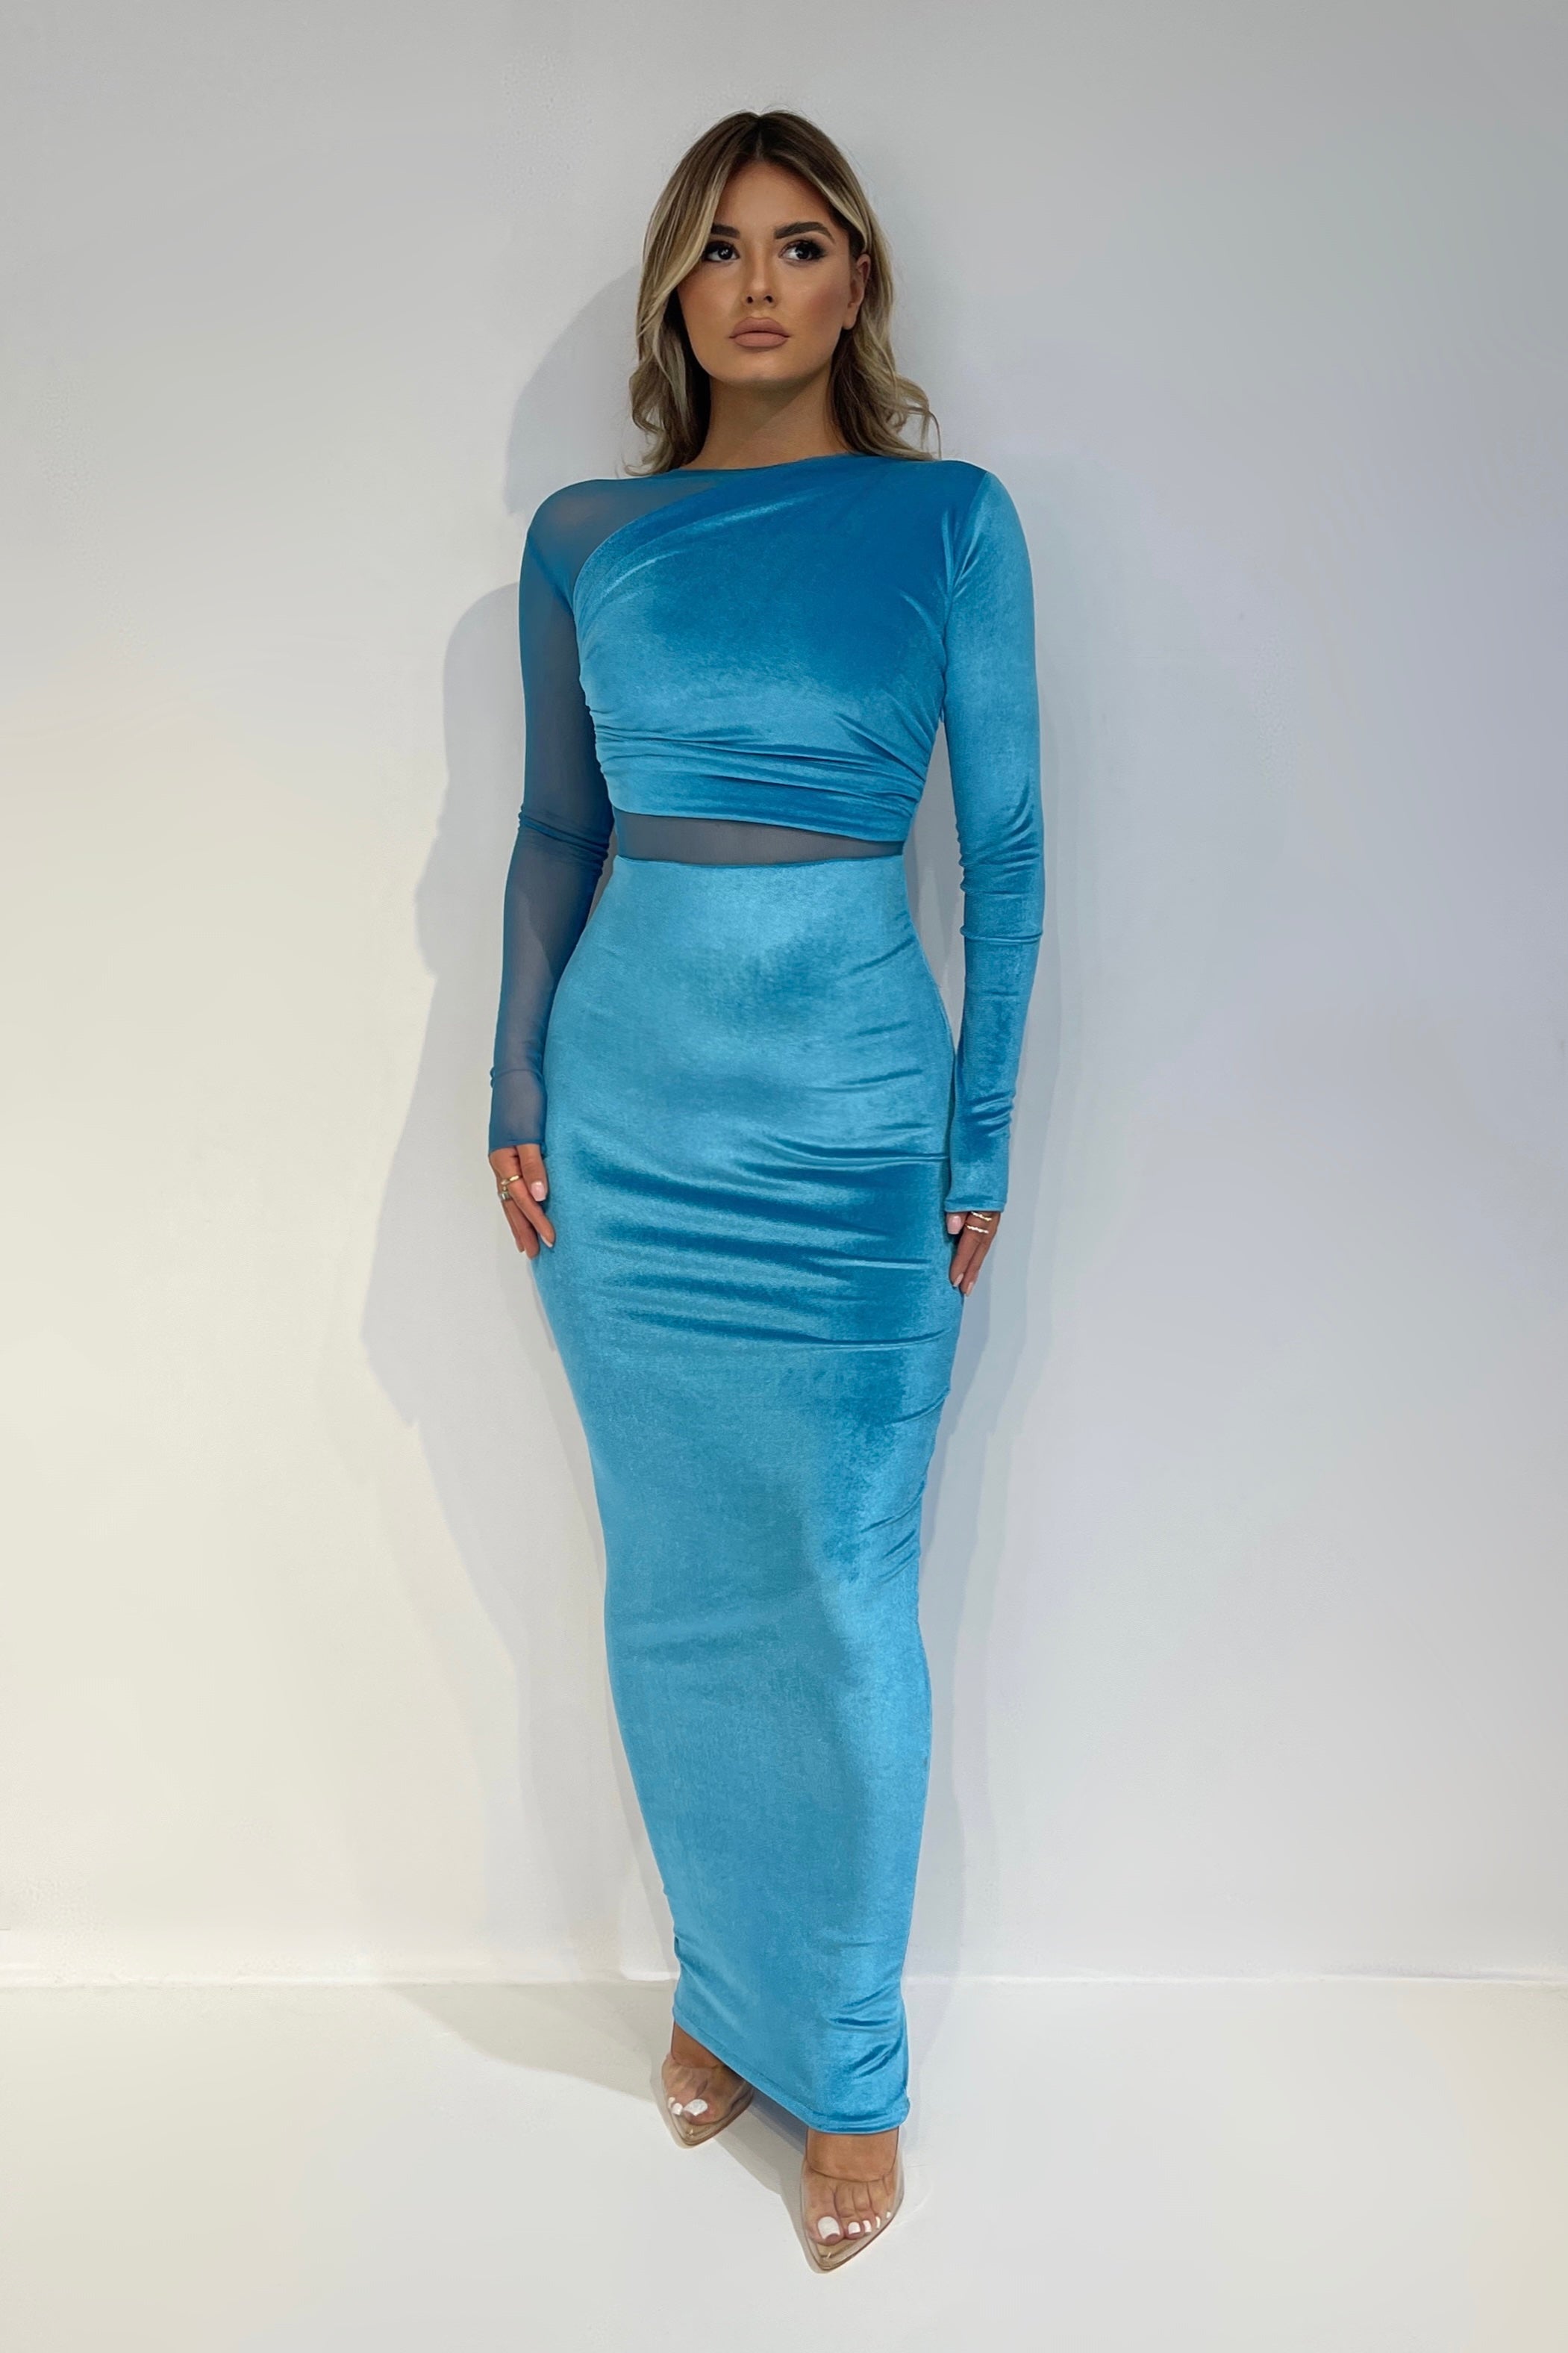 Siriel Aqua Dress